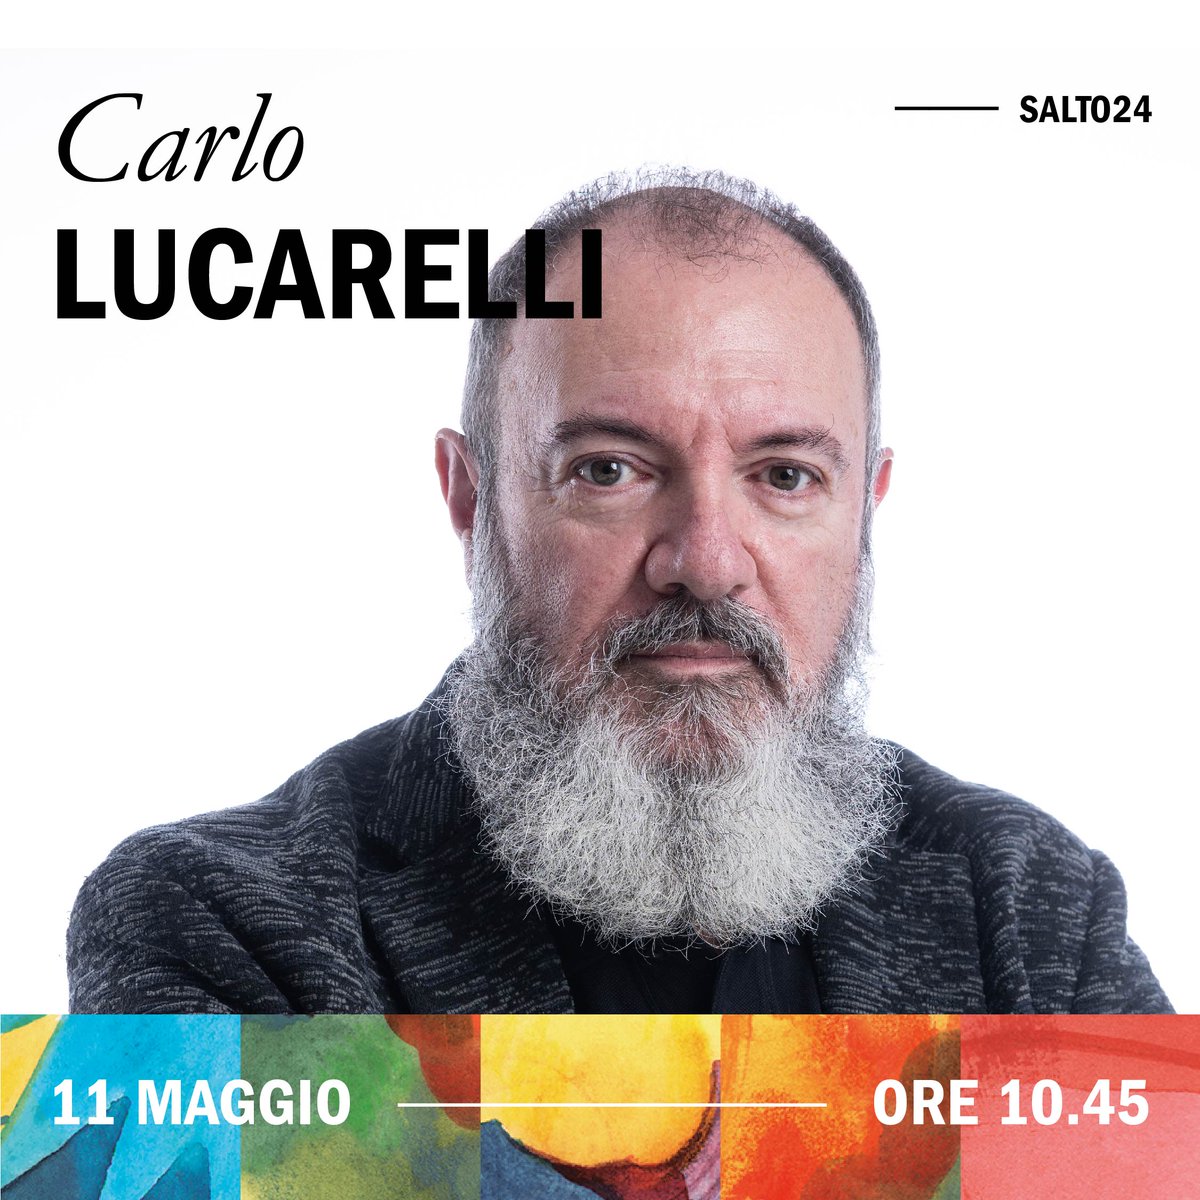 Carlo Lucarelli sarà al #SalTo24 insieme a @marcomaisano per un incontro realizzato in collaborazione con One Podcast. L'appuntamento è alle ore 10.45 dell'11 maggio, in Sala Azzurra.